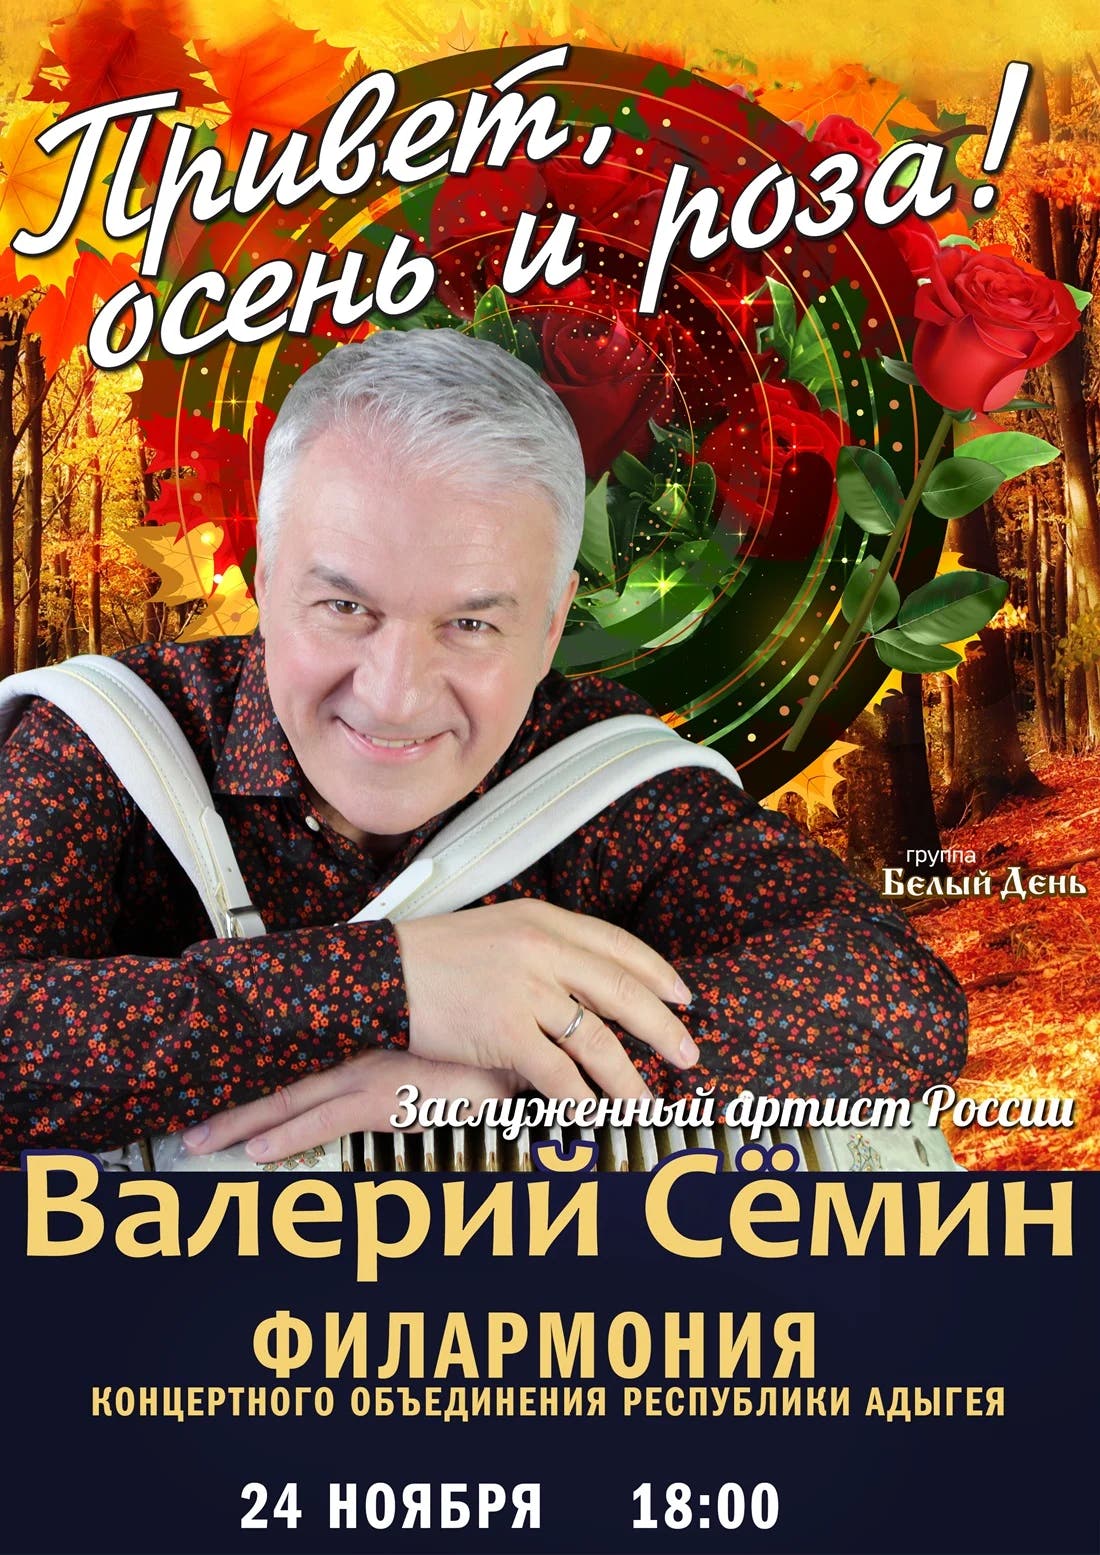 Концерт Валерий Сёмин. Концерт «Привет, осень и роза!»